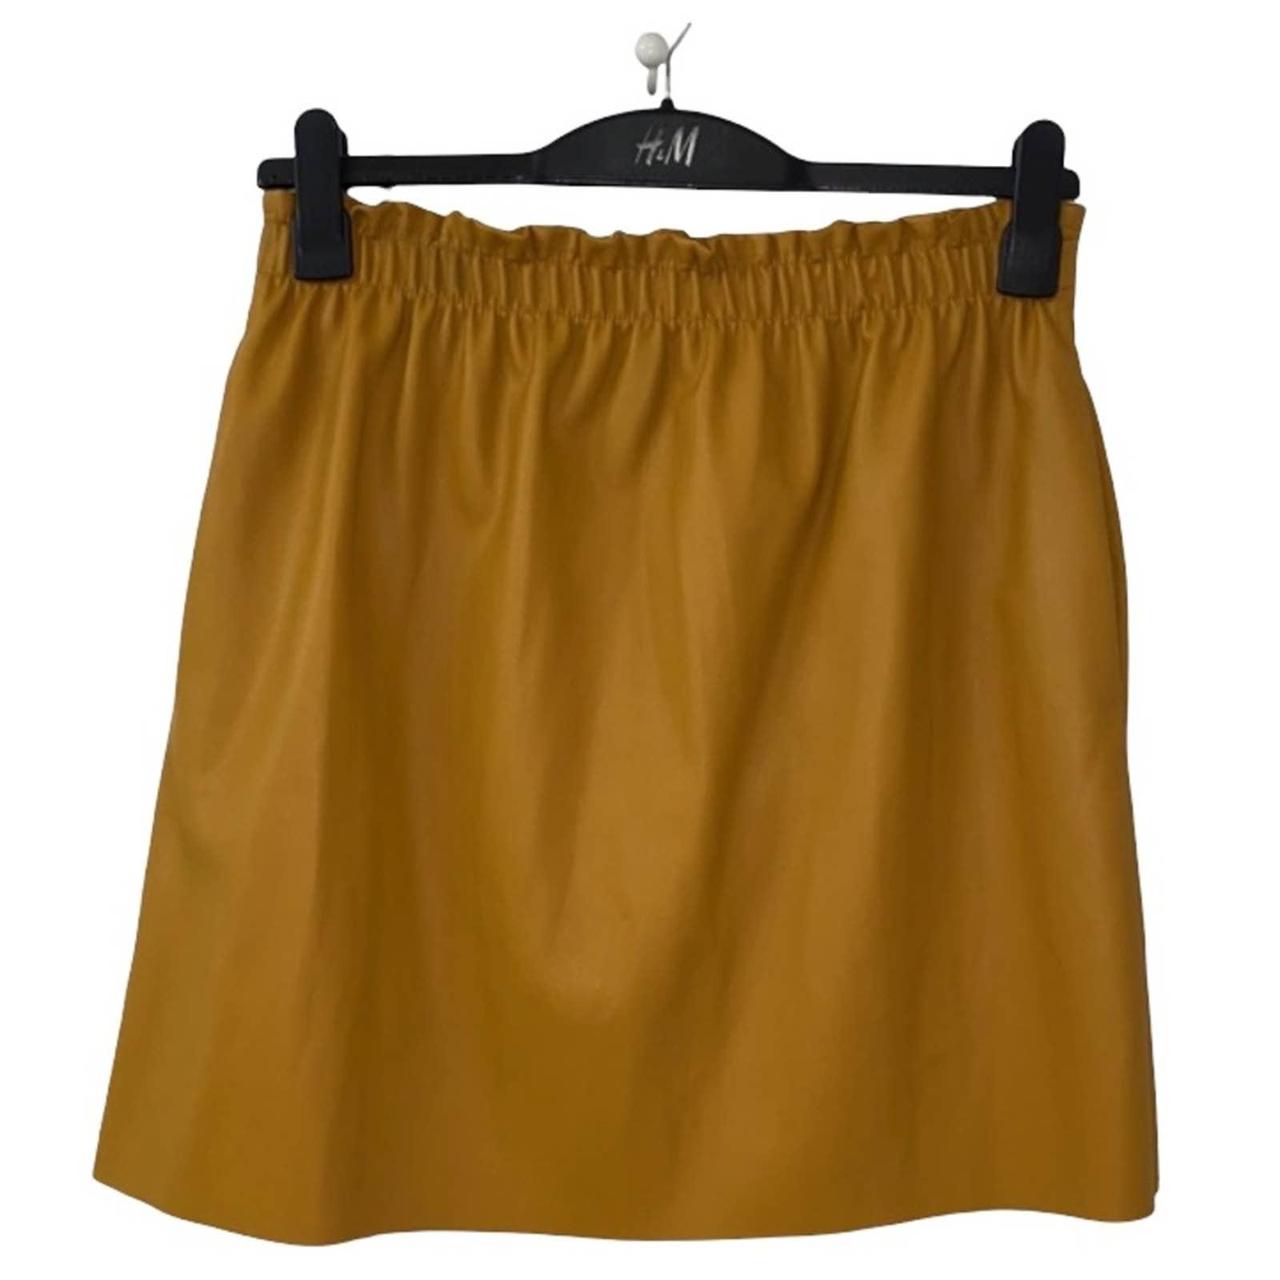 Zara Women's Yellow Skirt